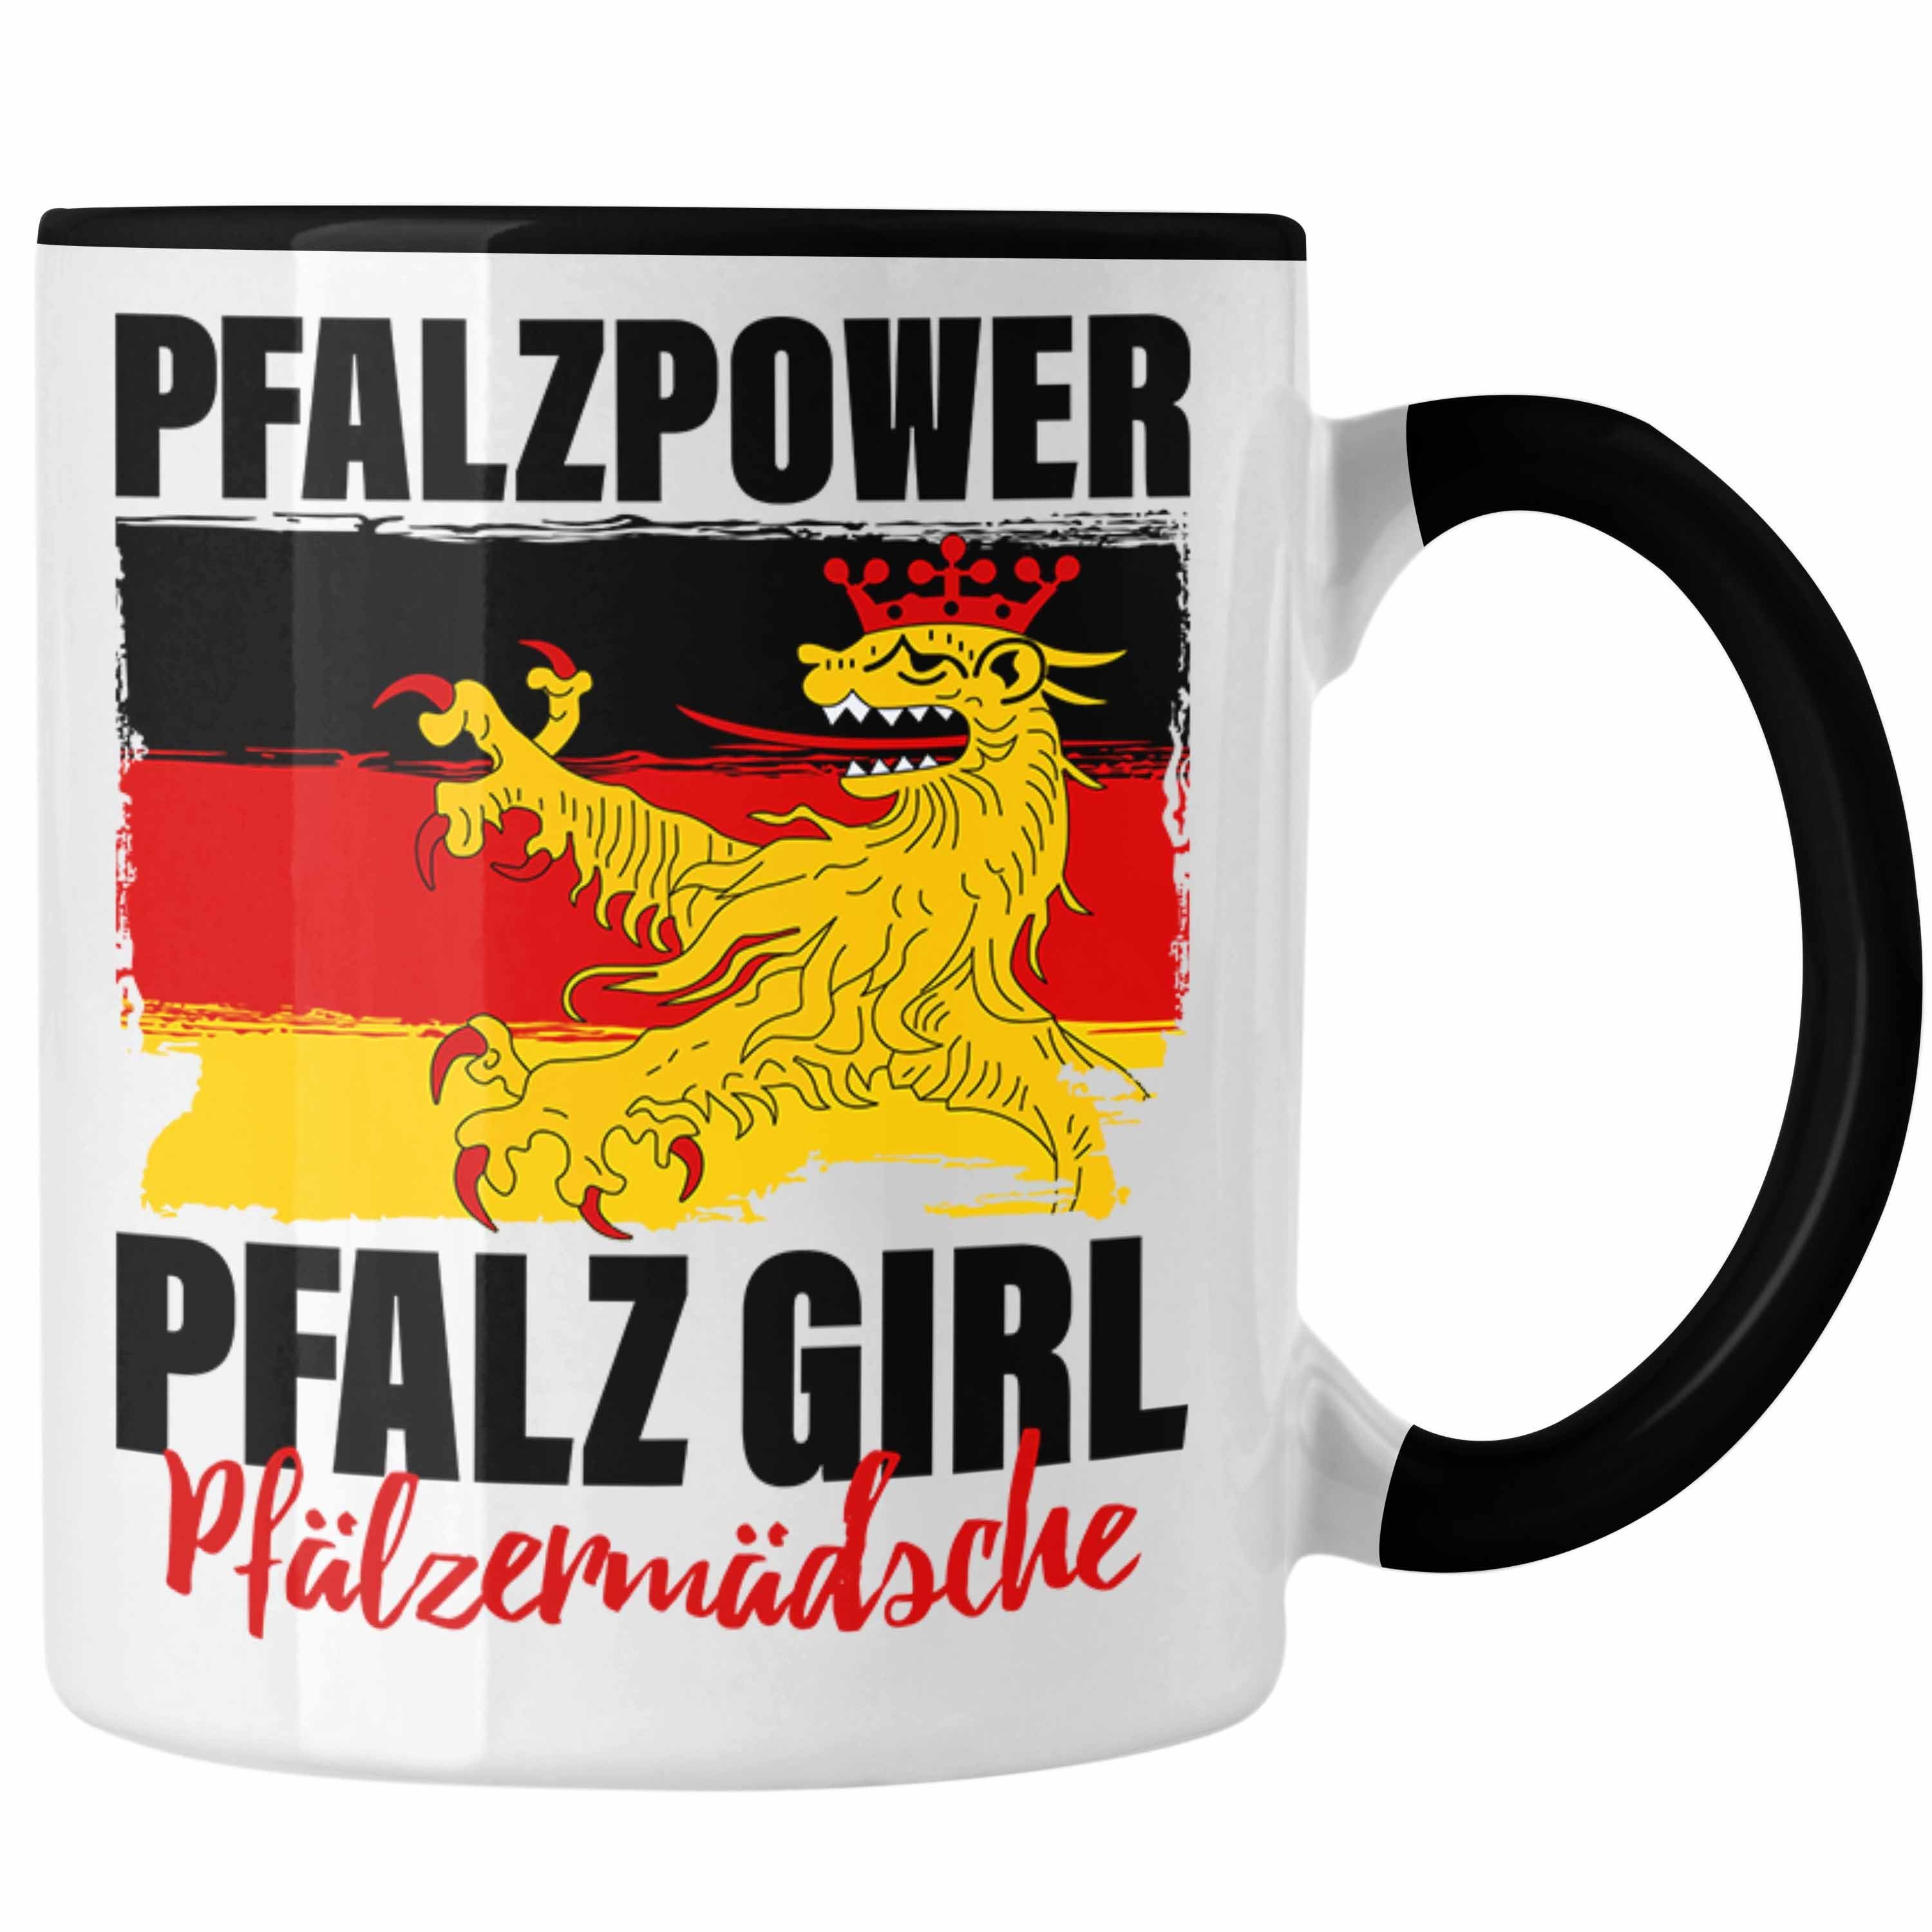 Trendation Tasse Pfalzpower Tasse Geschenk Frauen Pfalz Girl Pfalzmädsche Schwarz